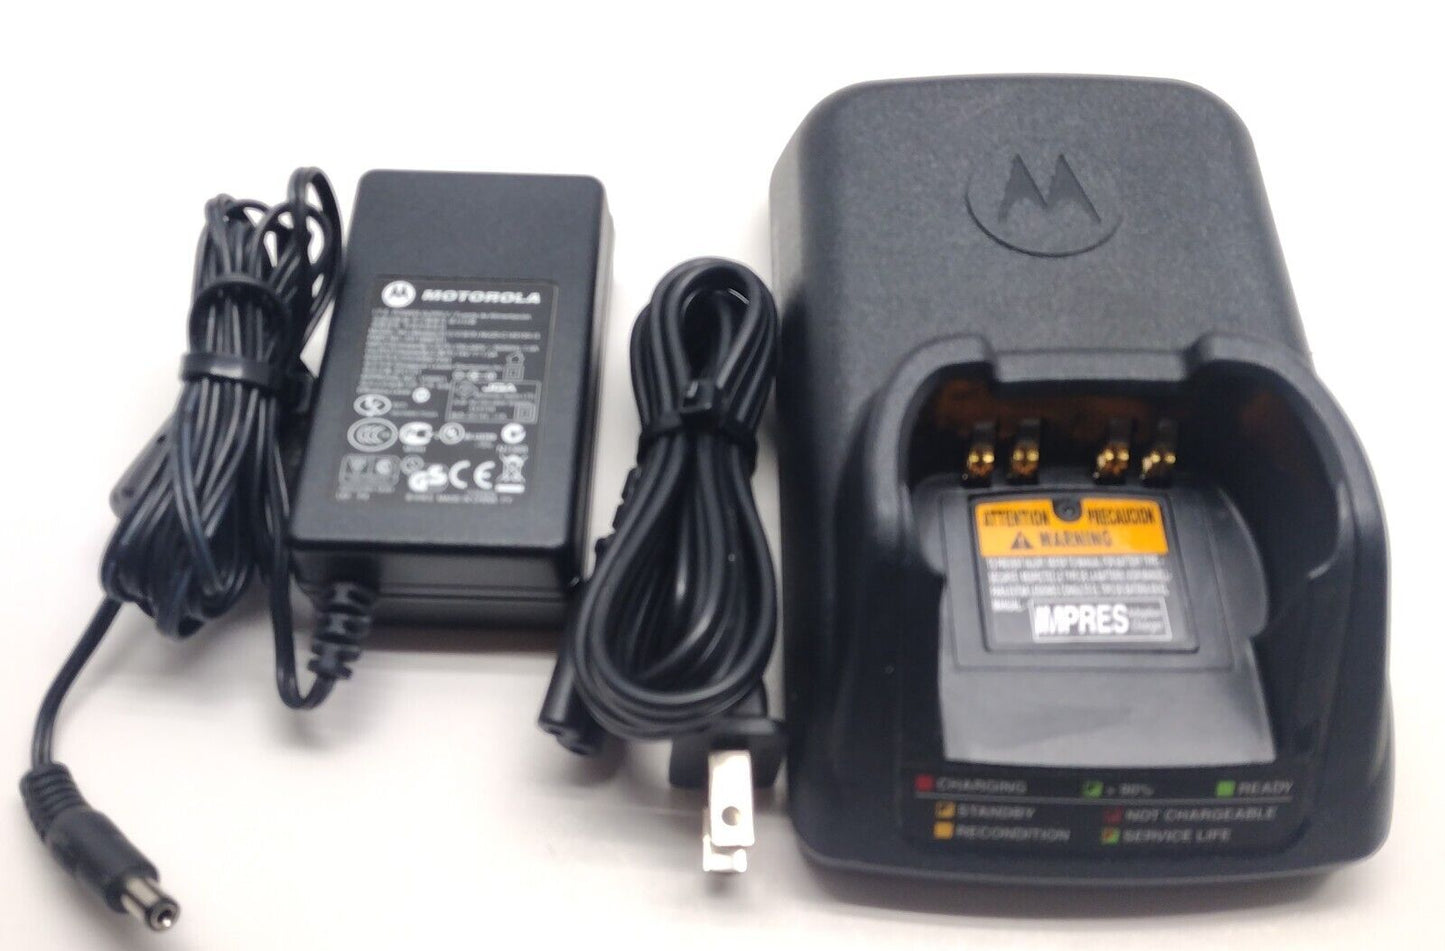 Motorola APX 6000 15 UHF 380470 MHz Two Way Radio AES 256  GPS BT H98QDD9PW5BN